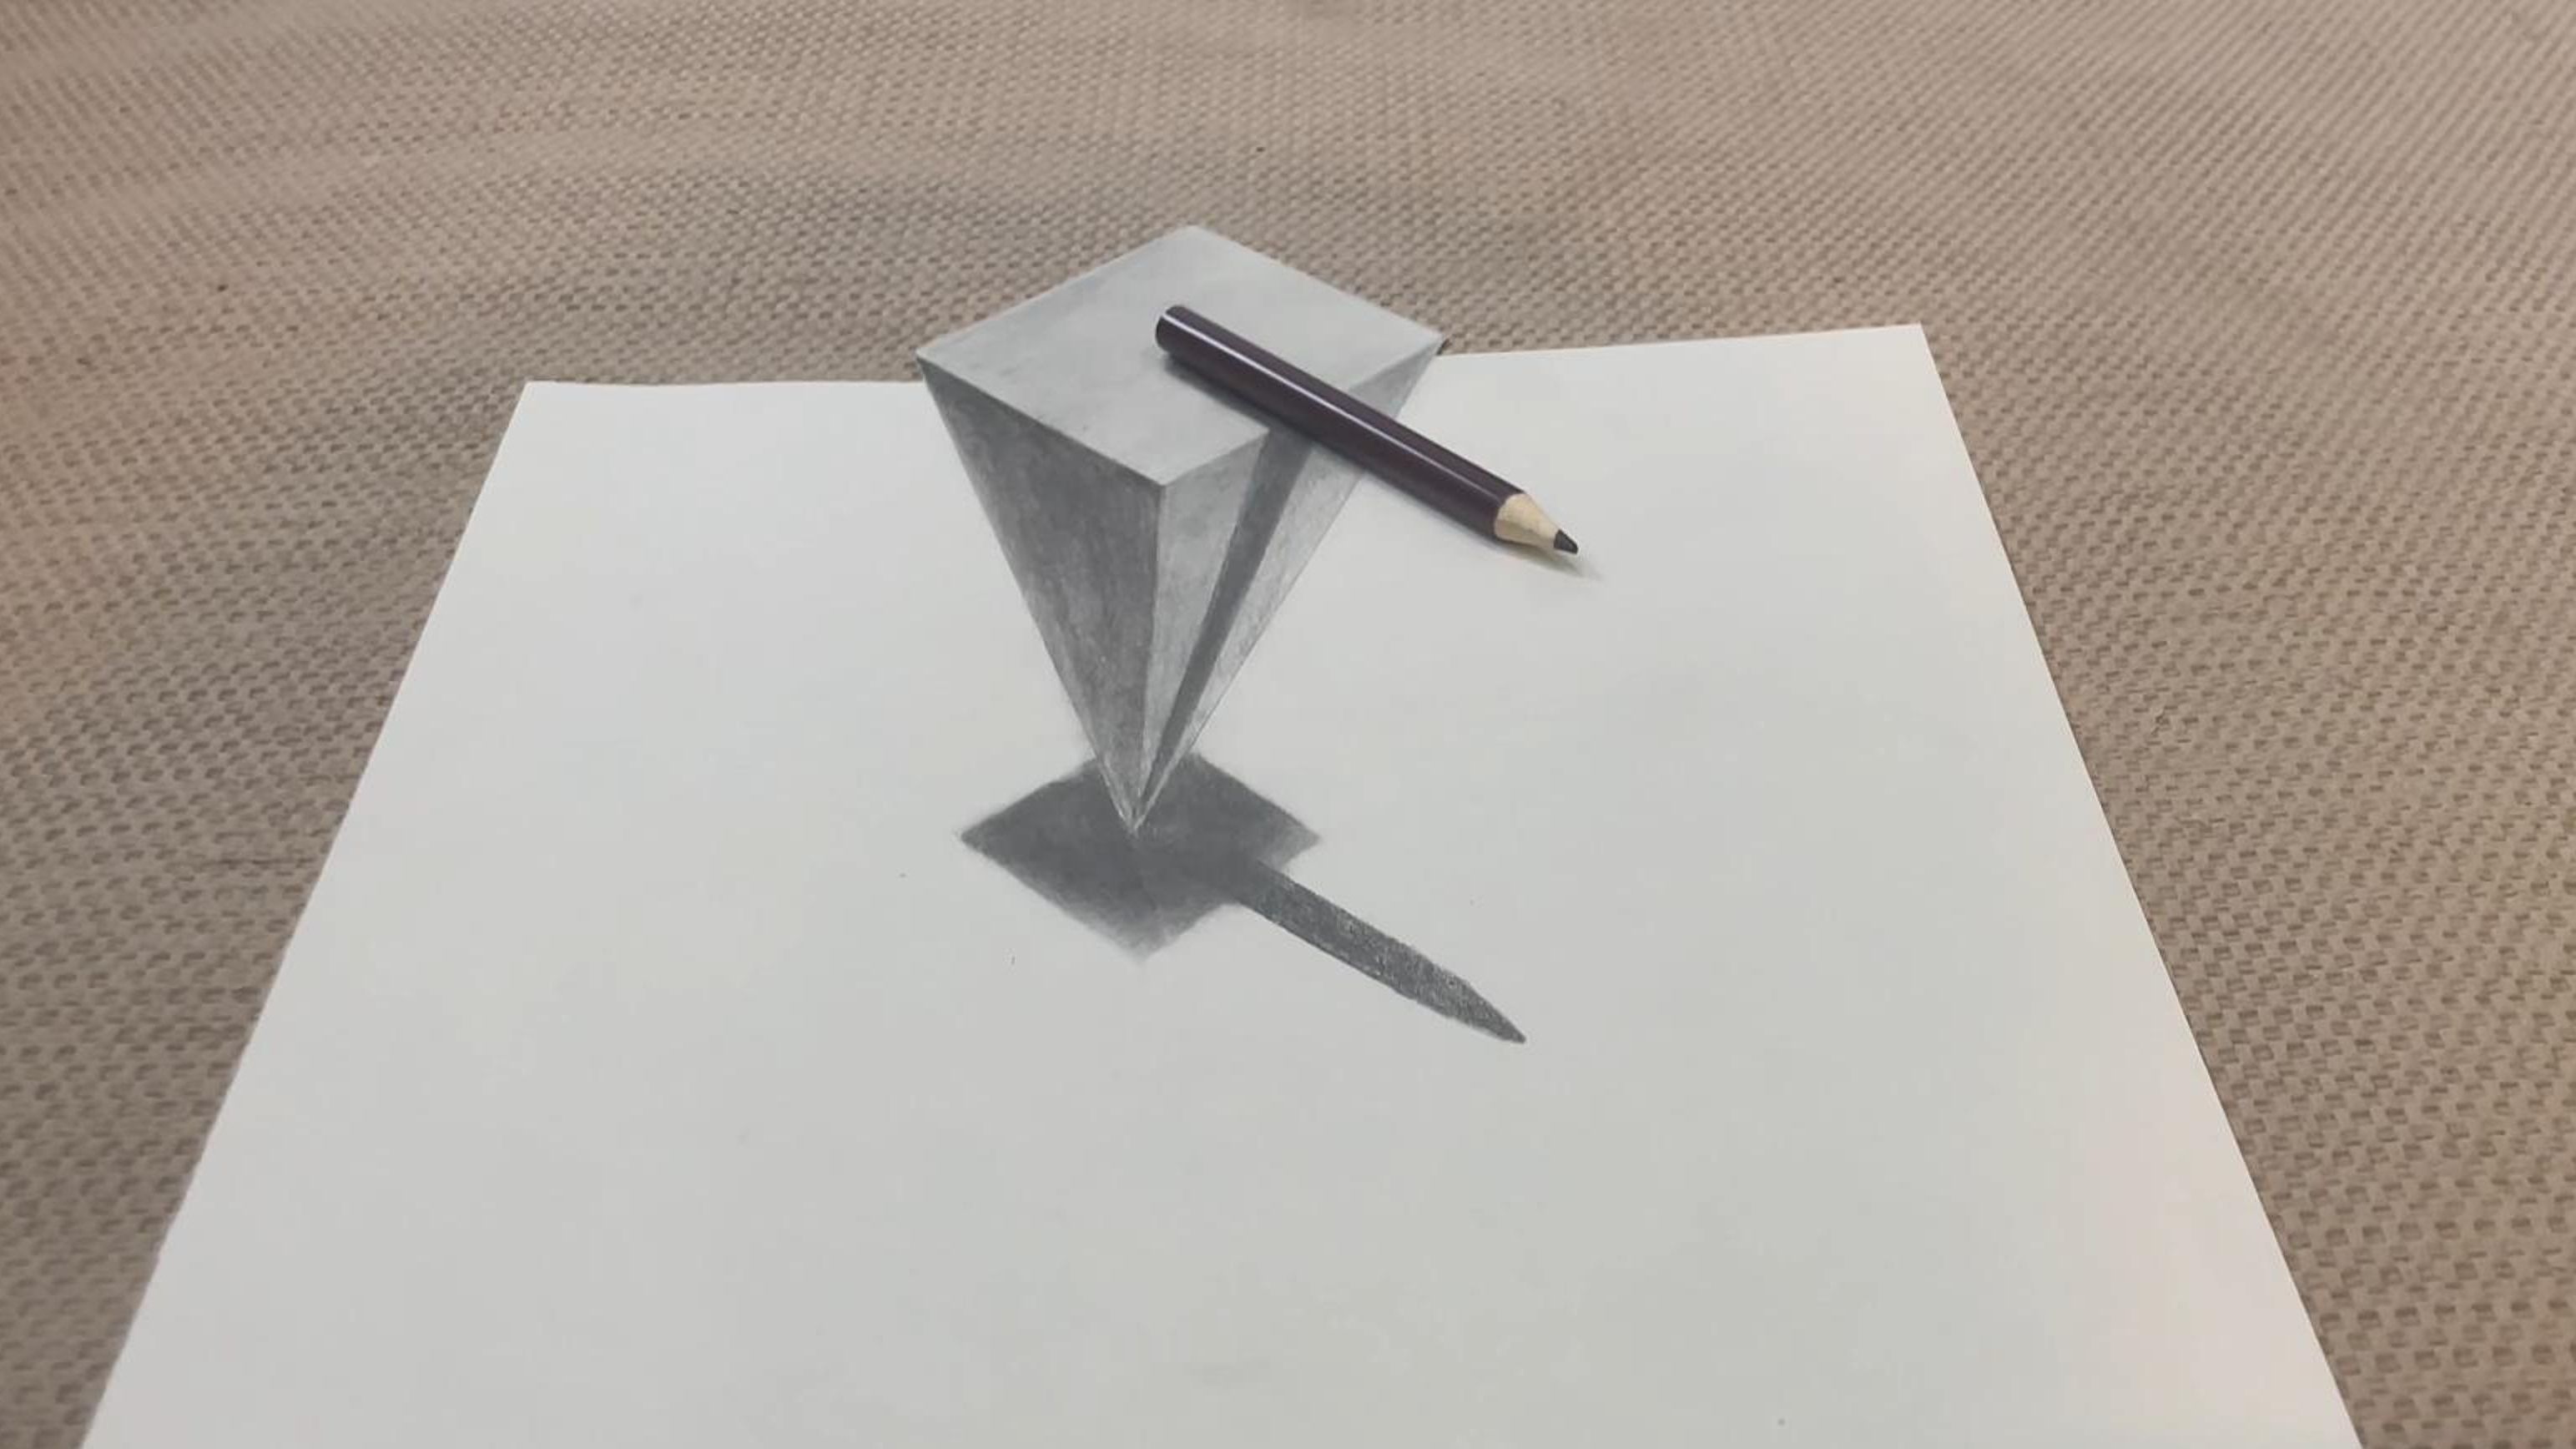 铅笔放在锥体上,与3d立体画融为一体